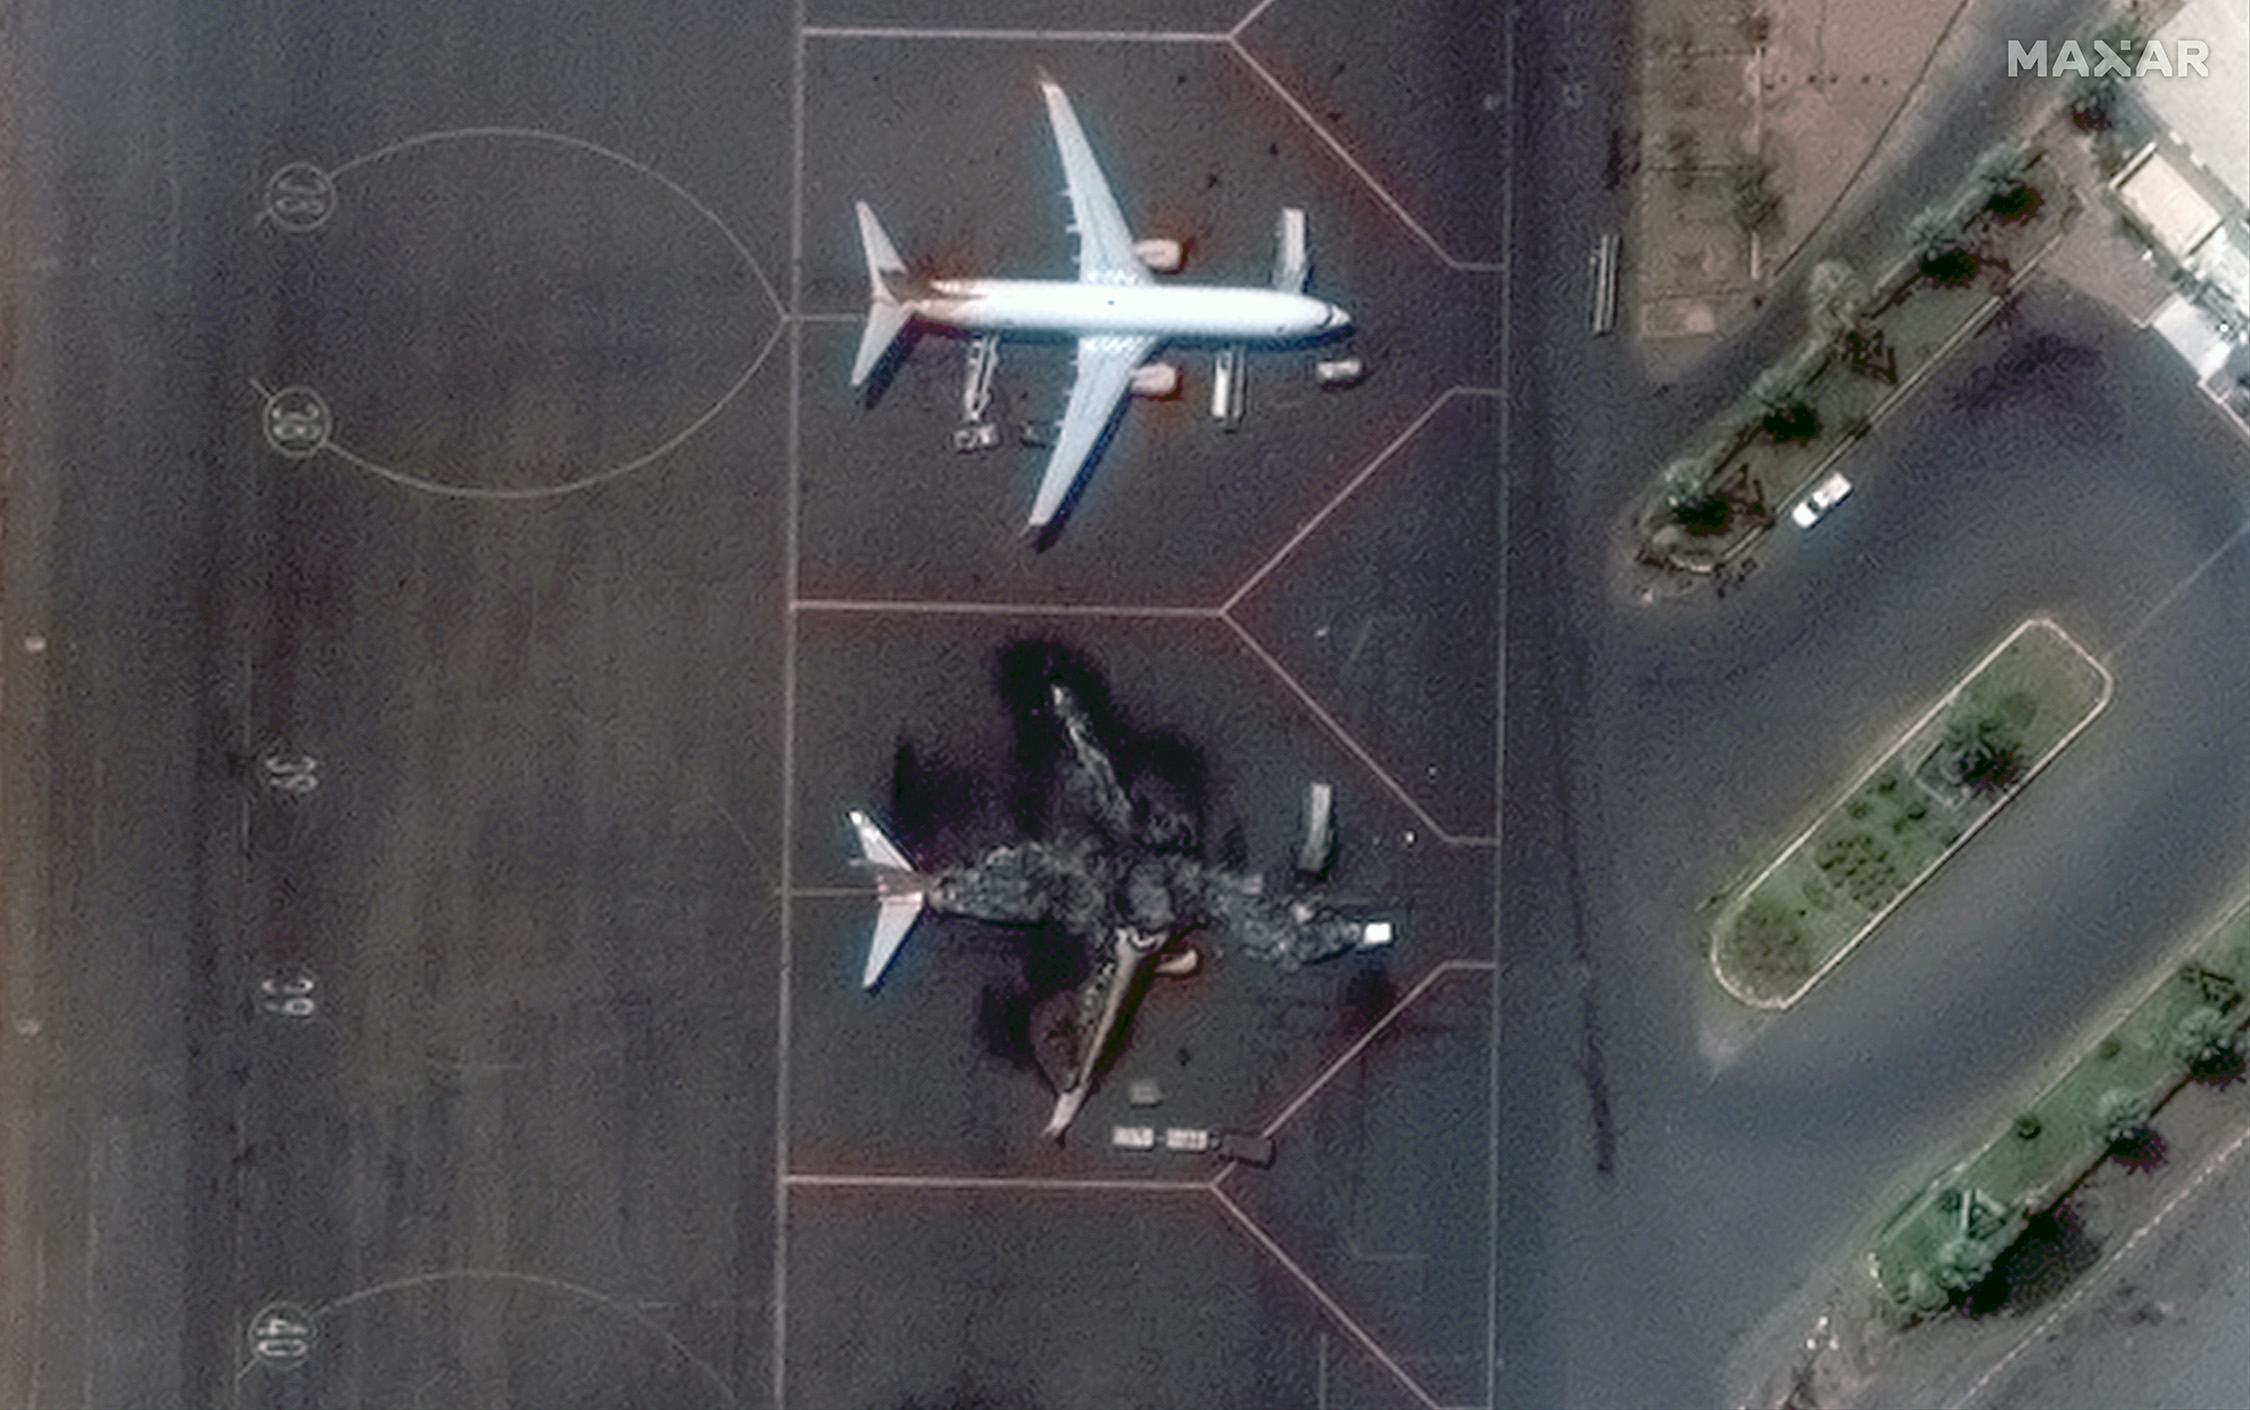 Судан. Появились спутниковые фото аэропорта, где горели самолеты, в том числе украинский